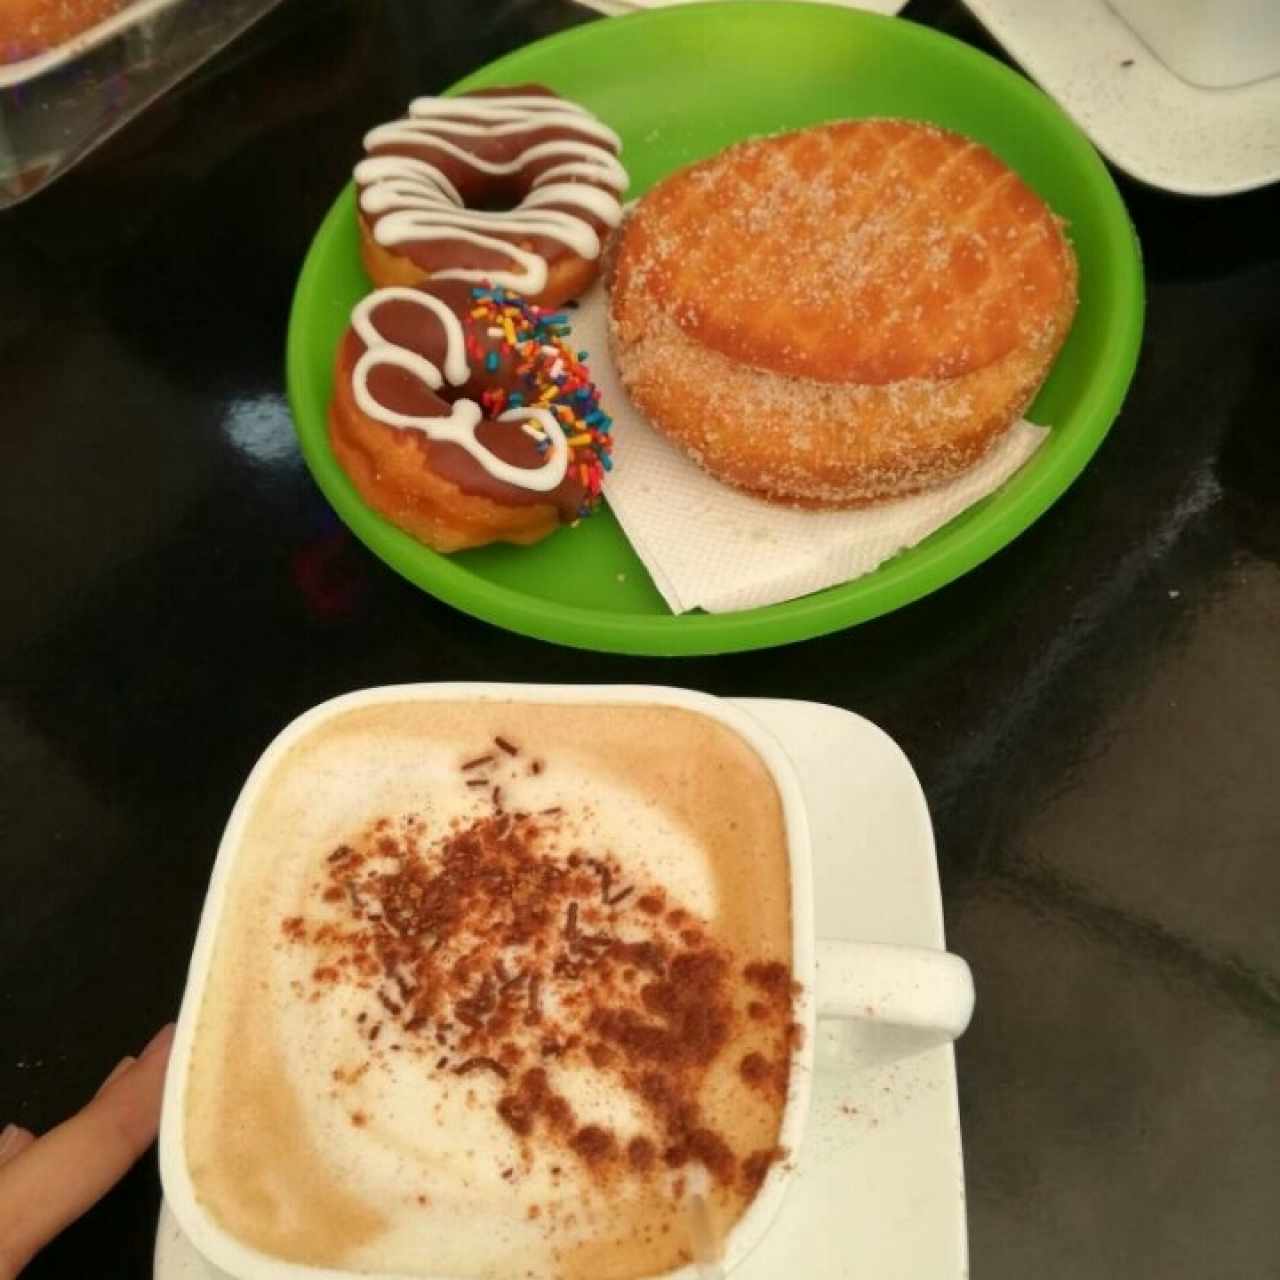 cafe guayoyo claro, mini donuts y bomba de nutella